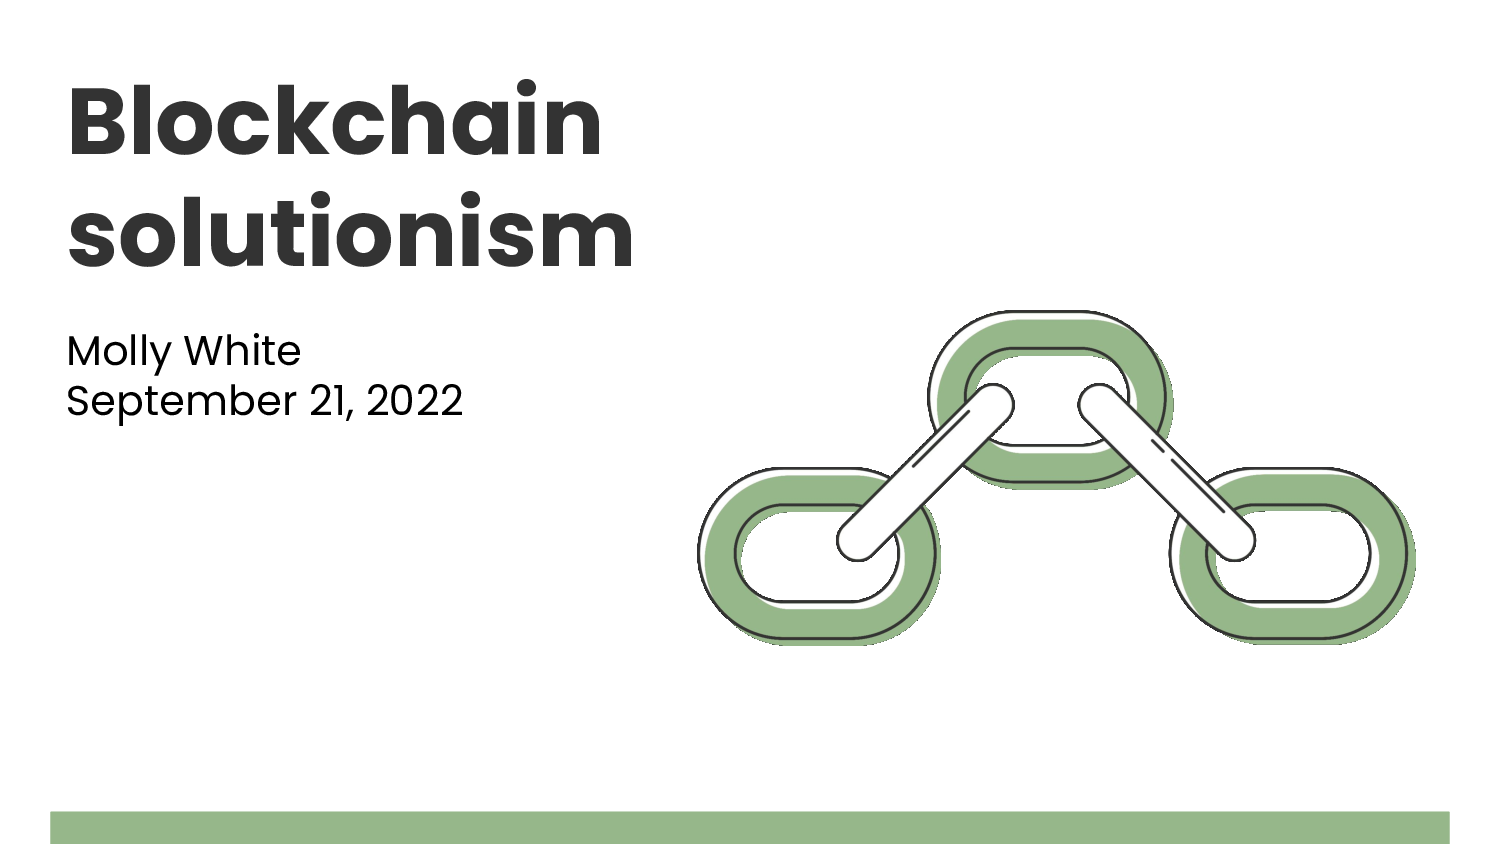 Blockchain solutionism. Molly White. September 21, 2022